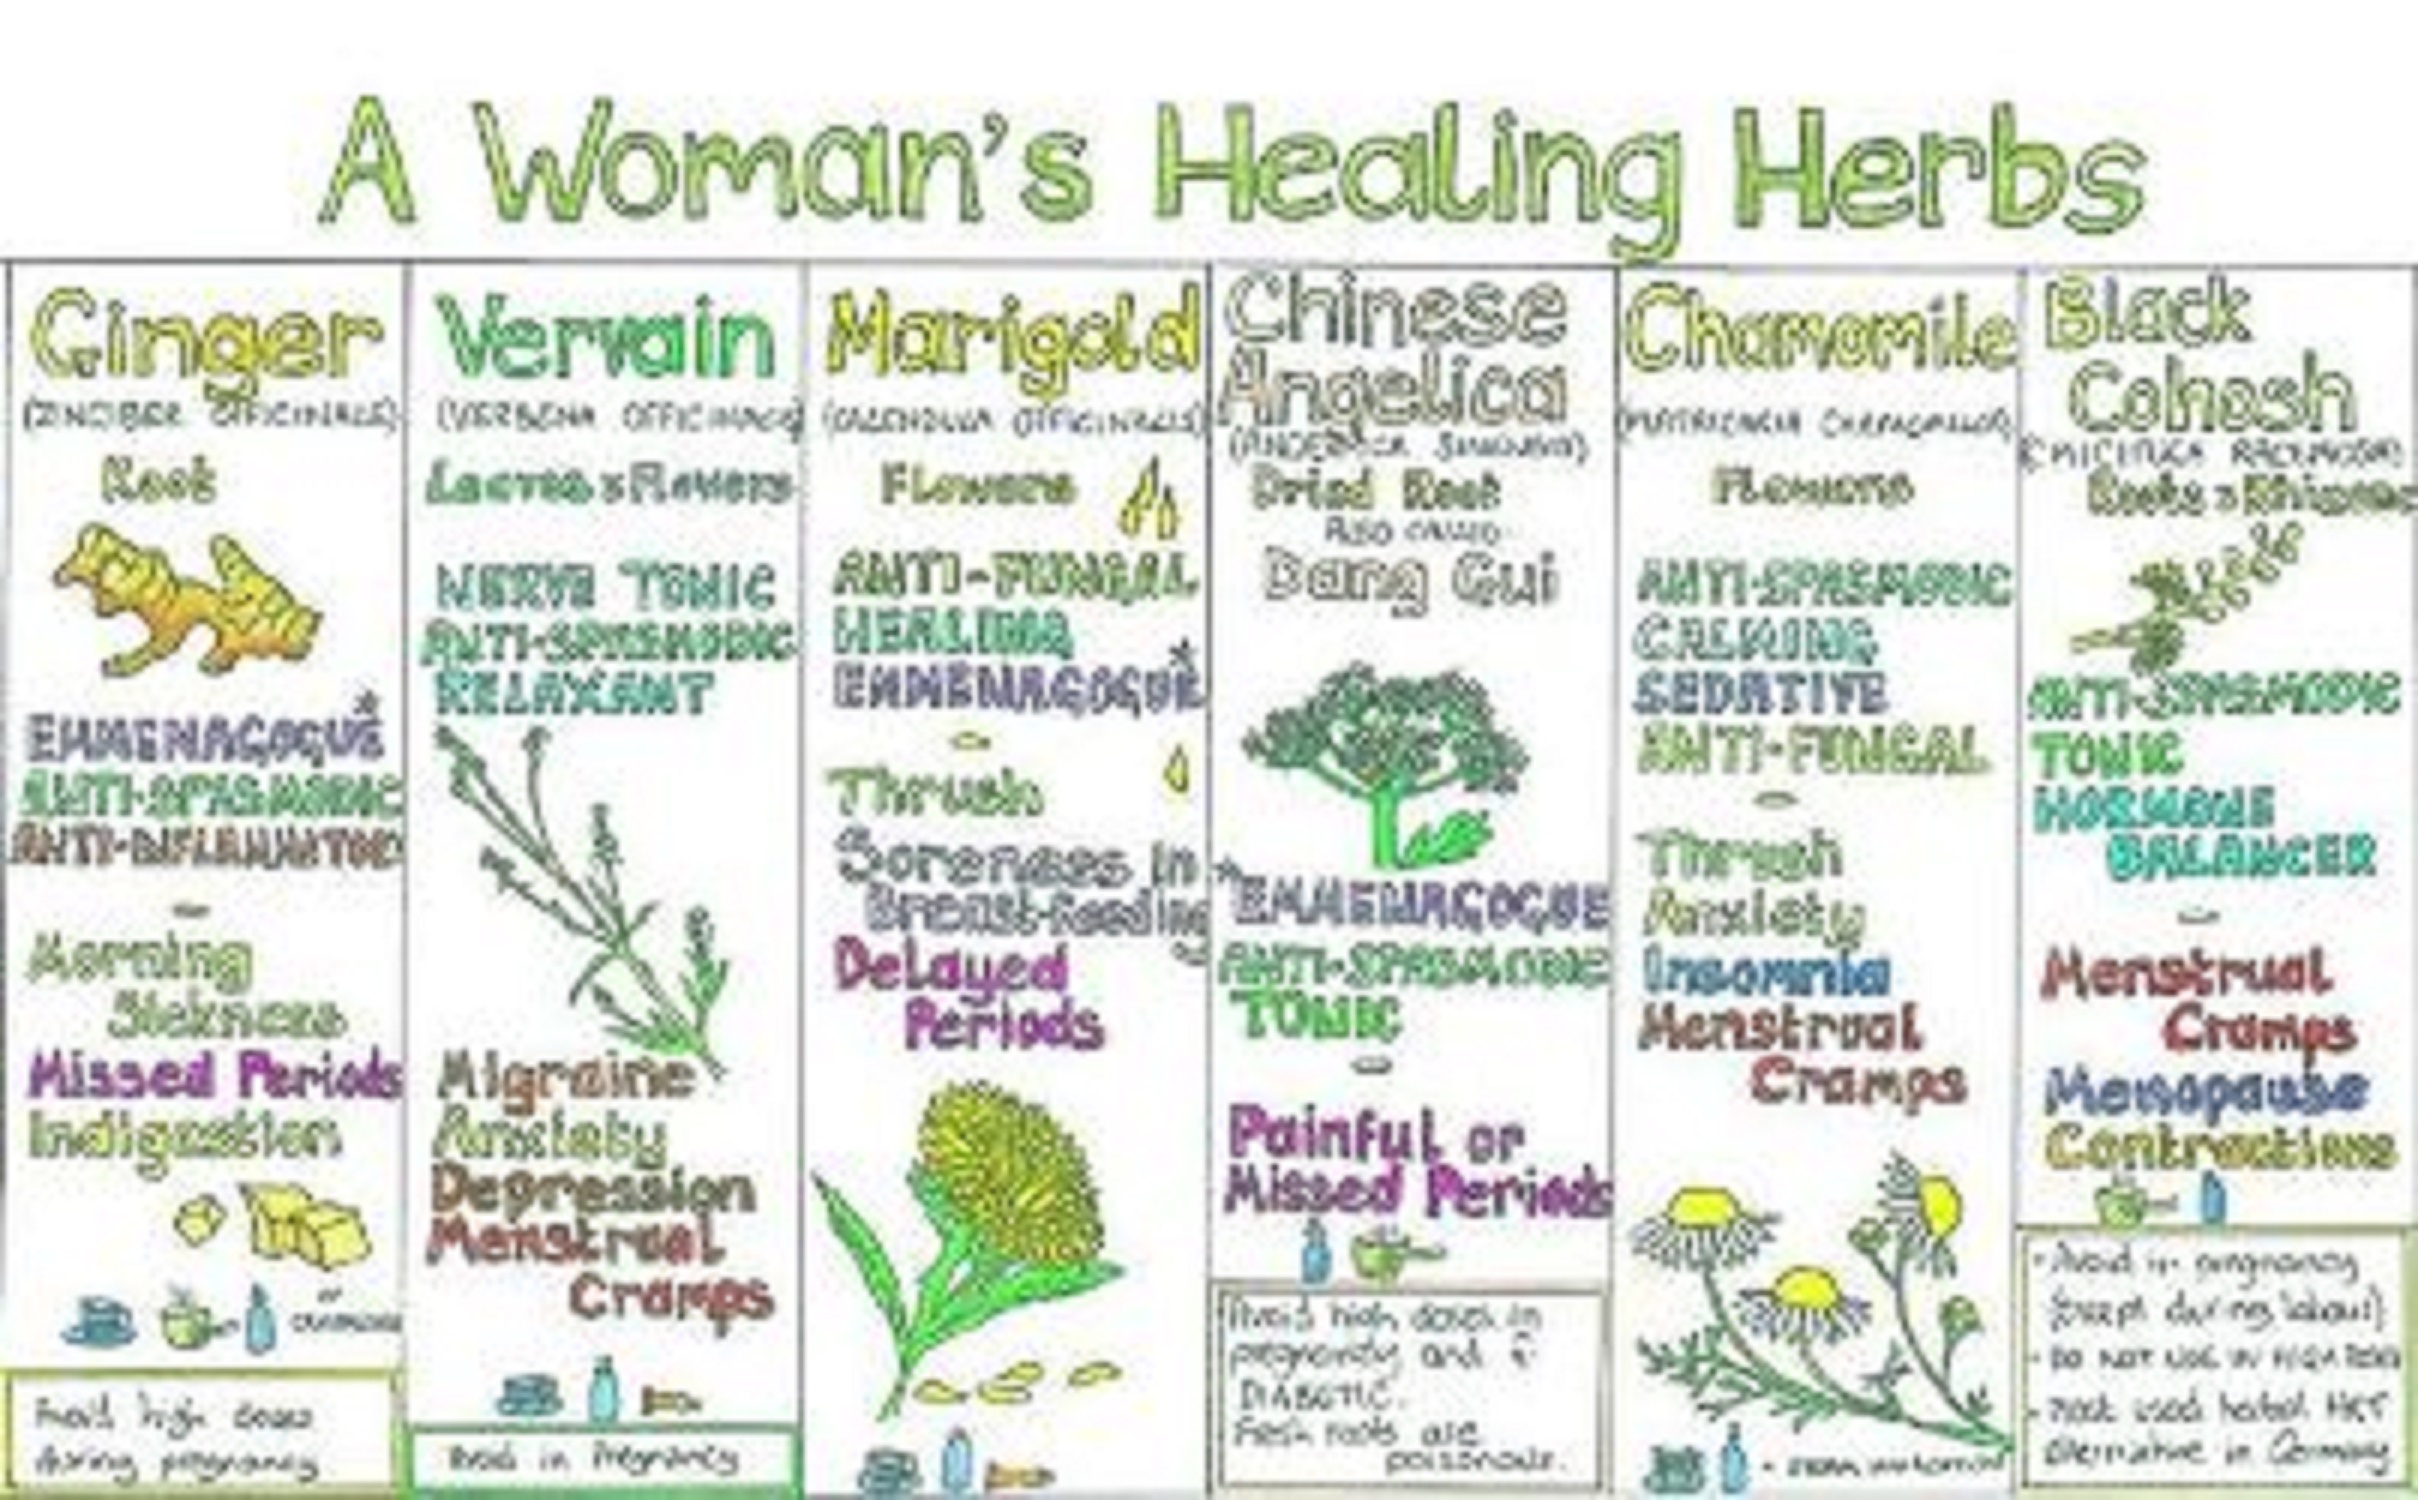 HEALING HERBS FOR WOMEN